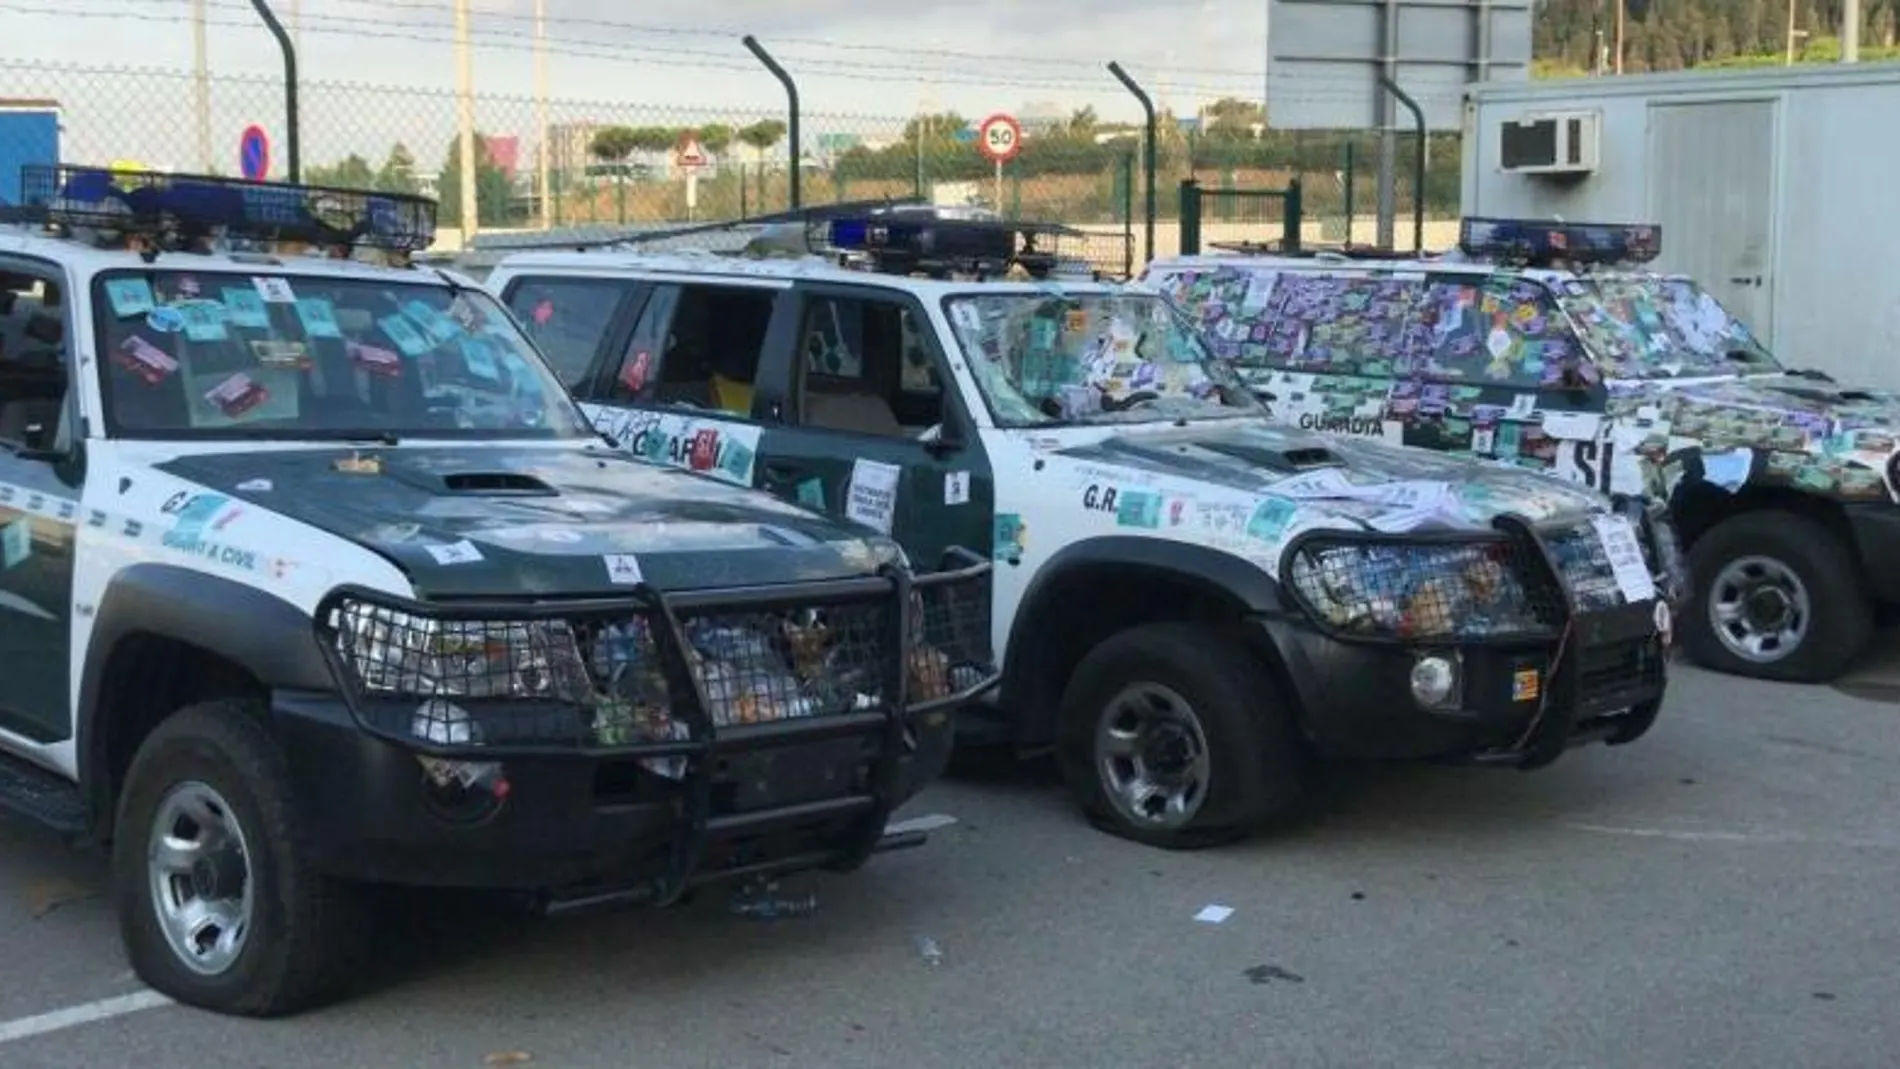 Imagen de tres de los vehículos de la Guardia Civil que fueron arrasados por la multitud la pasada semana en Barcelona.